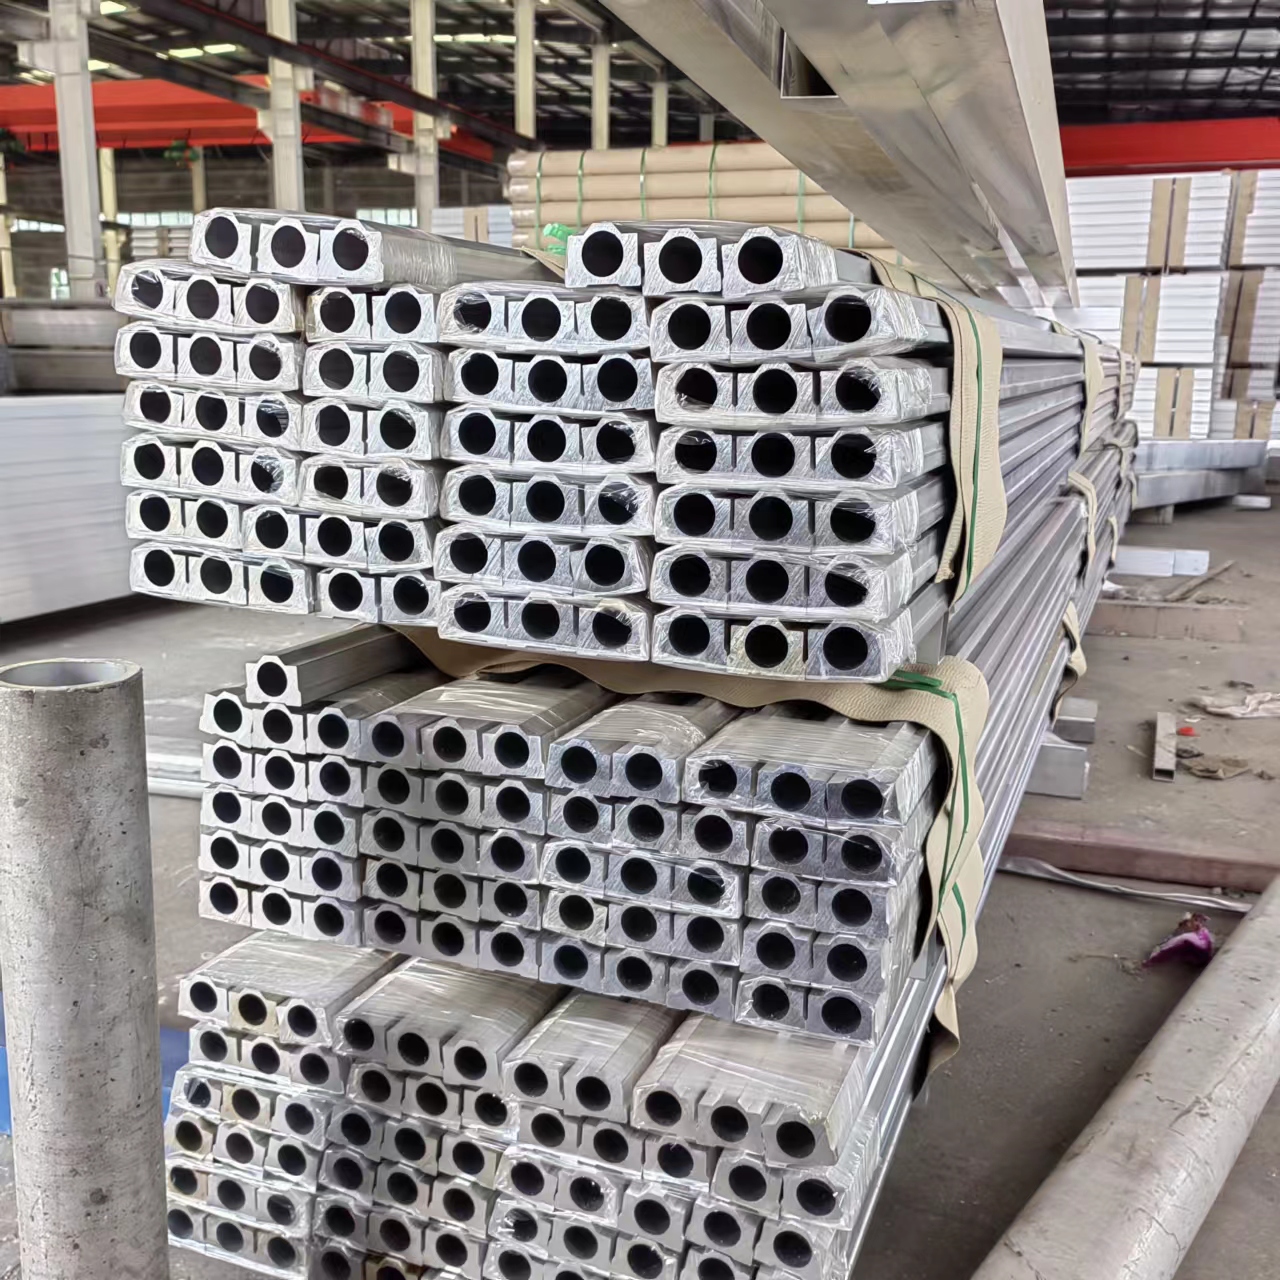 6063铝管 铝合金管沪铝铝业铝方管 铝棒铝排 铝型材定制异型铝材